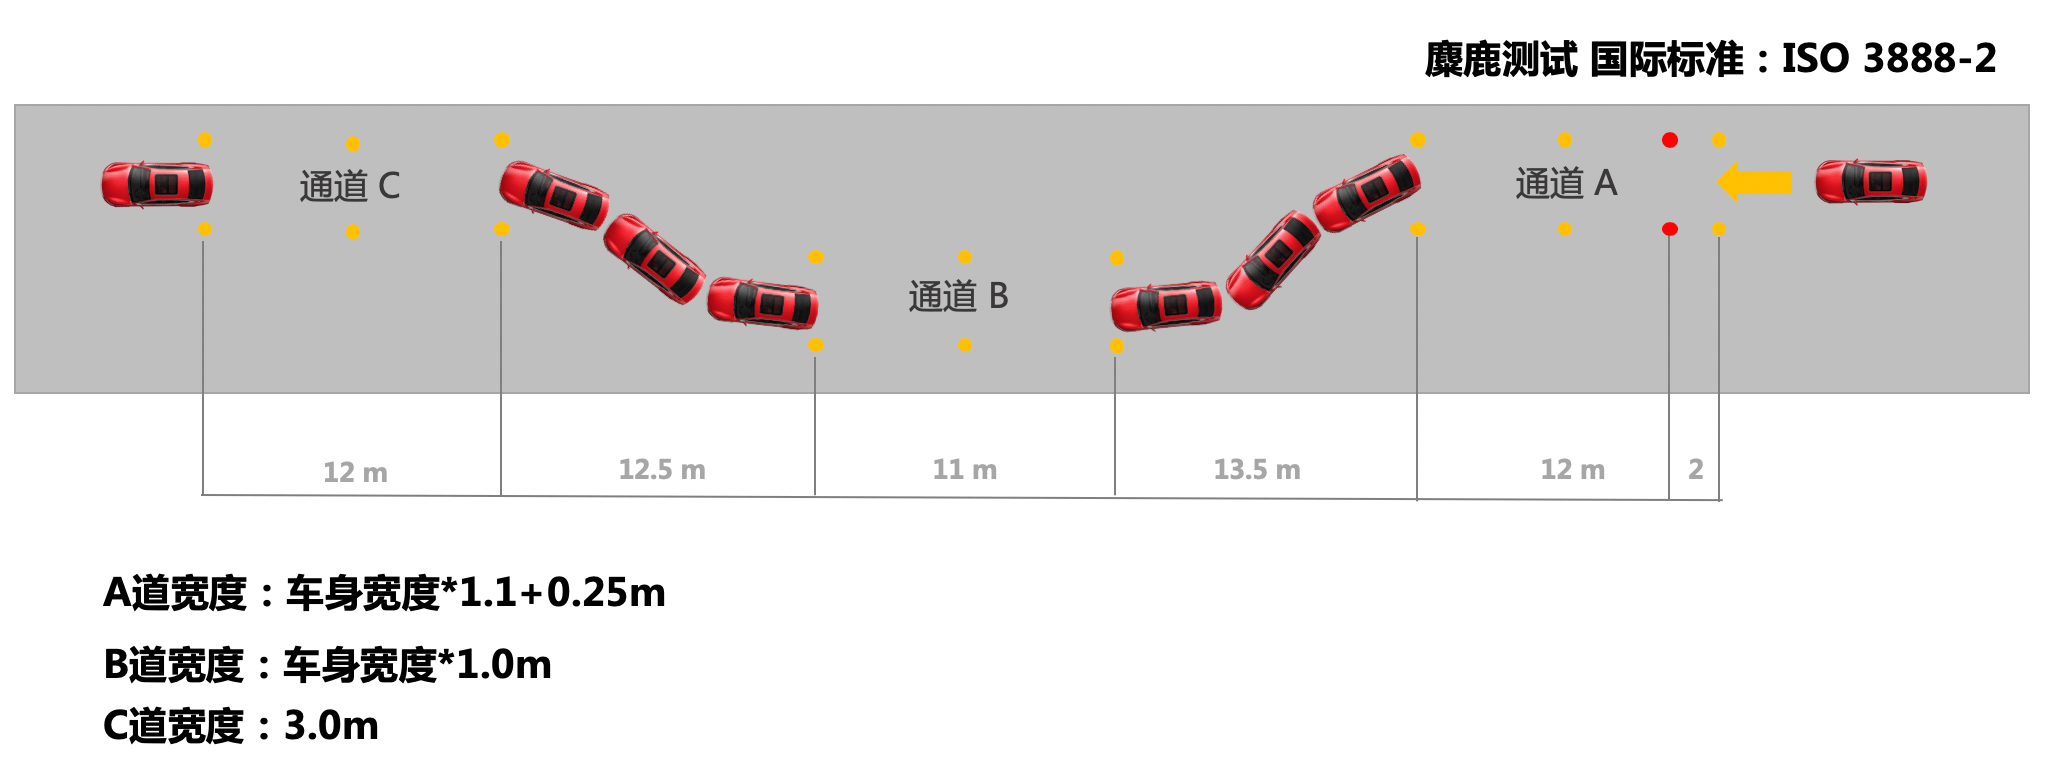 汽车麋鹿测试排行表图片